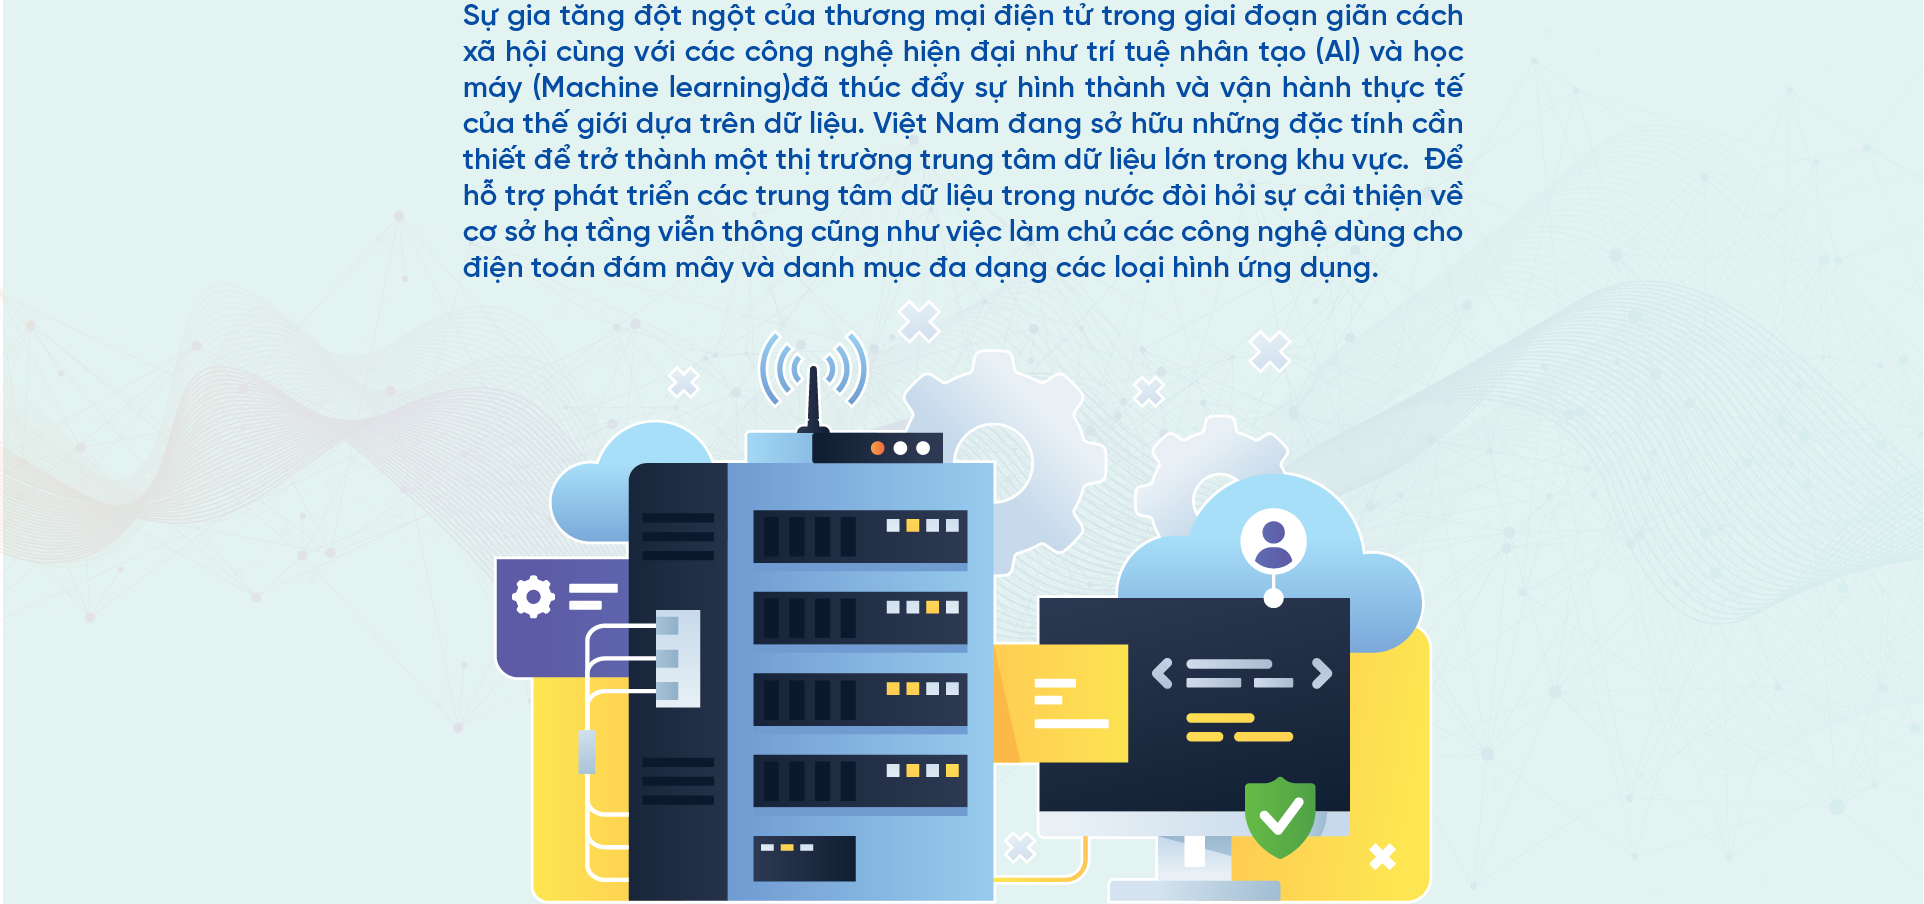 Việt Nam đang sở hữu những đặc tính cần thiết để trở thành một thị trường trung tâm dữ liệu lớn trong khu vực - Ảnh 2